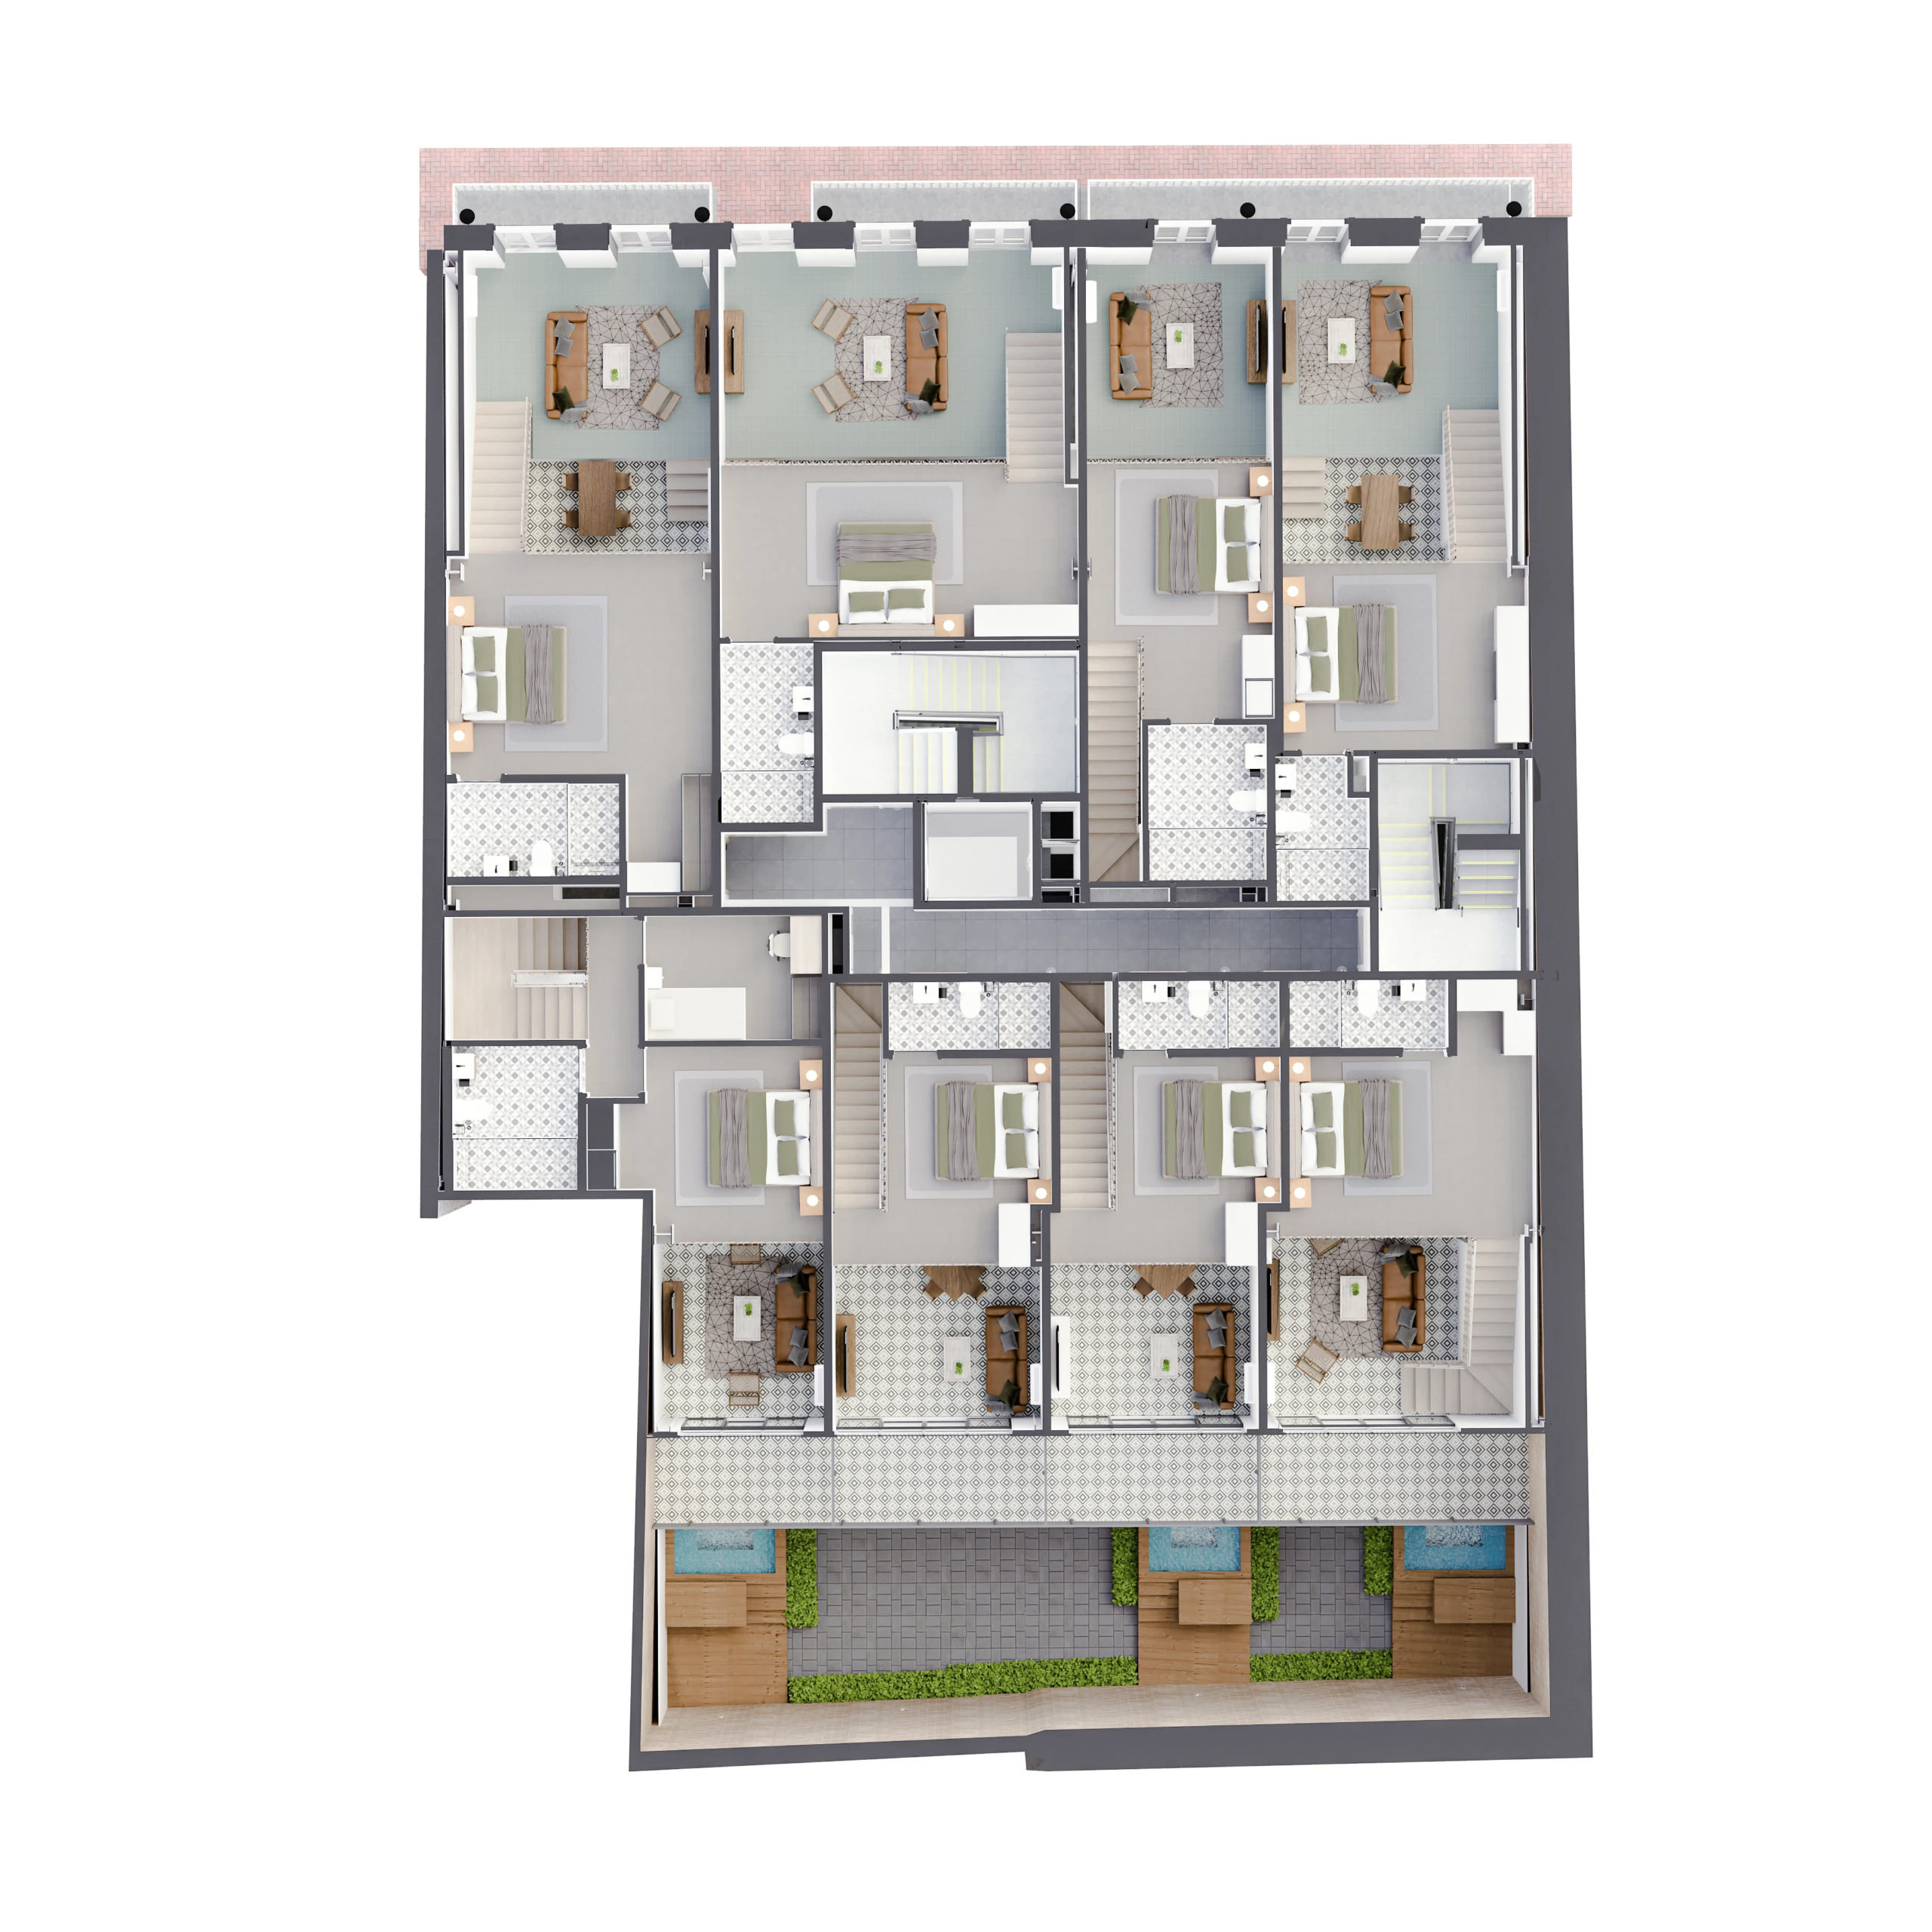 casa variedades floor plan level 2